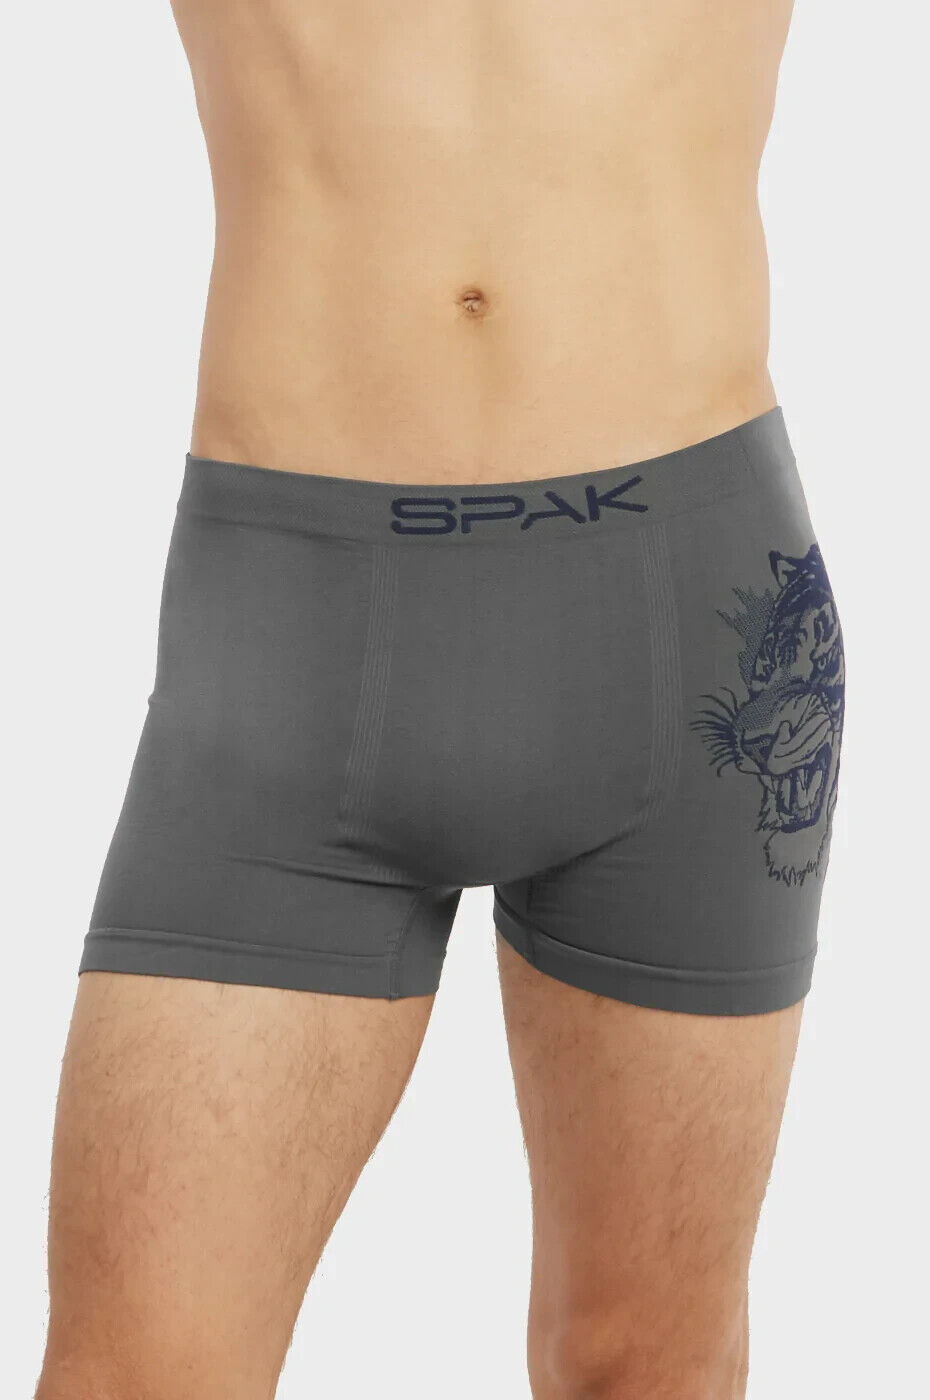 Lot 6 Pack Mens Microfiber Boxer Briefs Underwear Compression Stretch #MSP020 SPAK - фотография #4